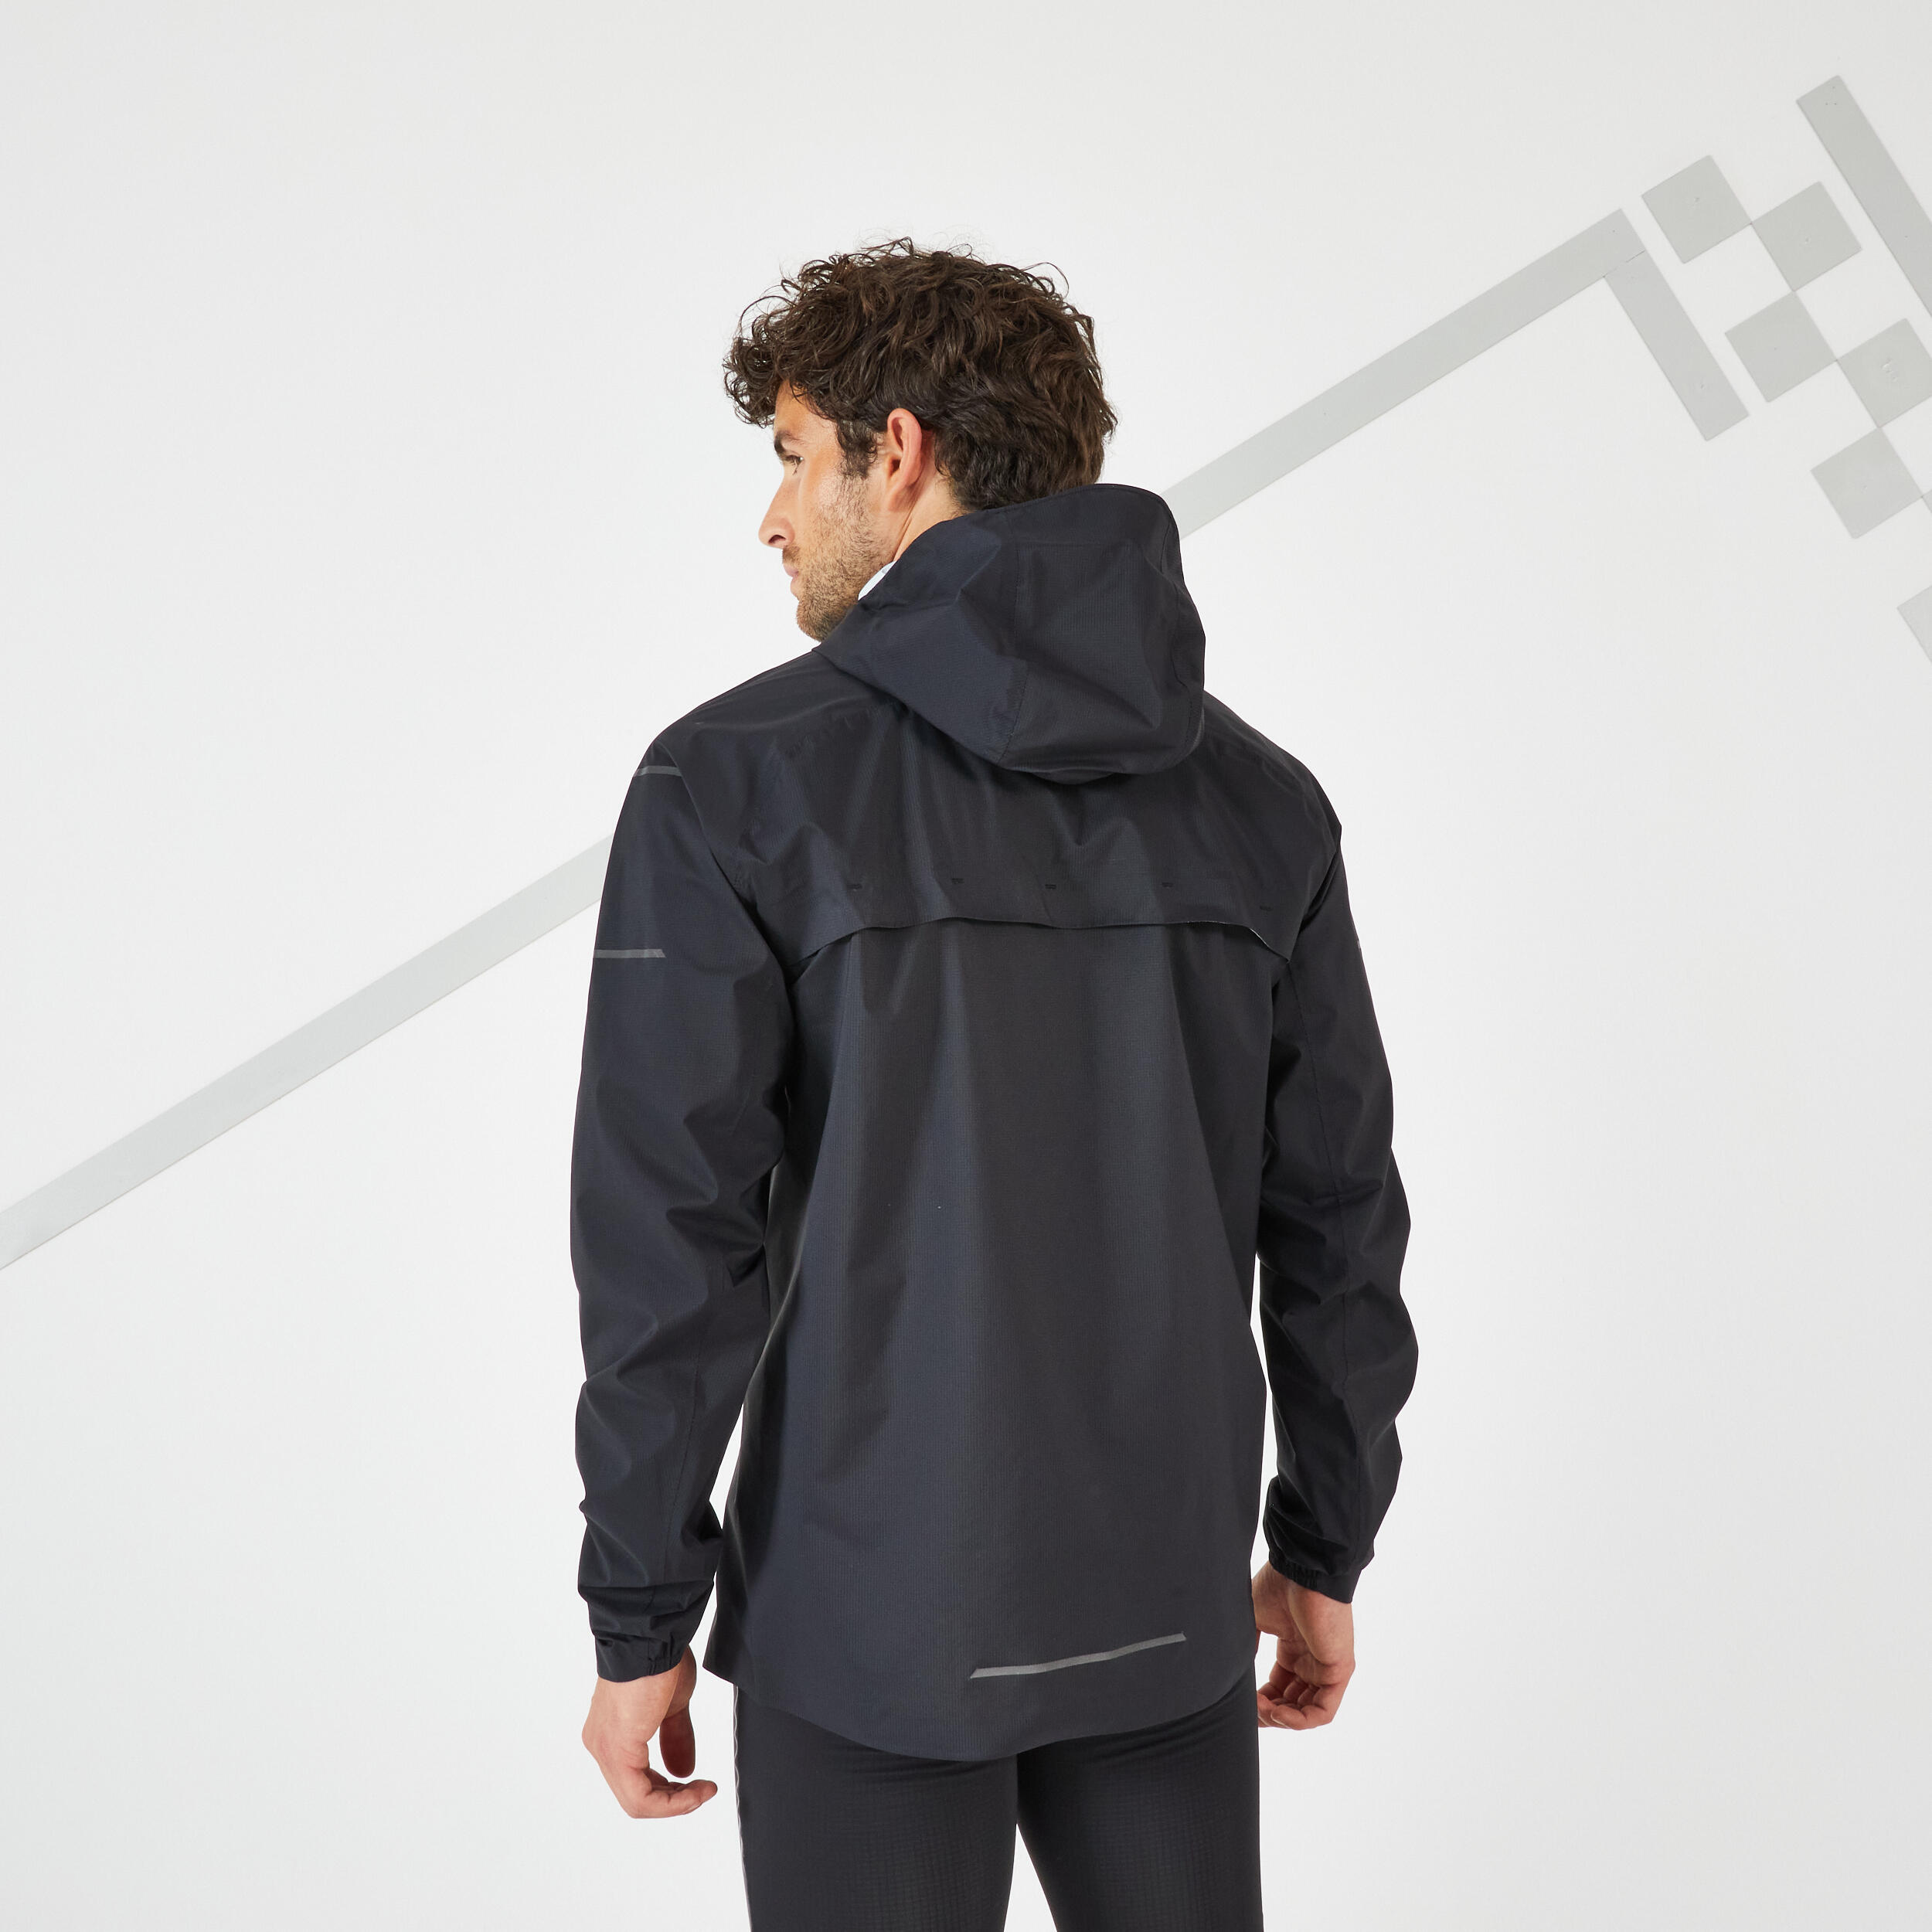 Men's Weatherproof Running Jacket - Black